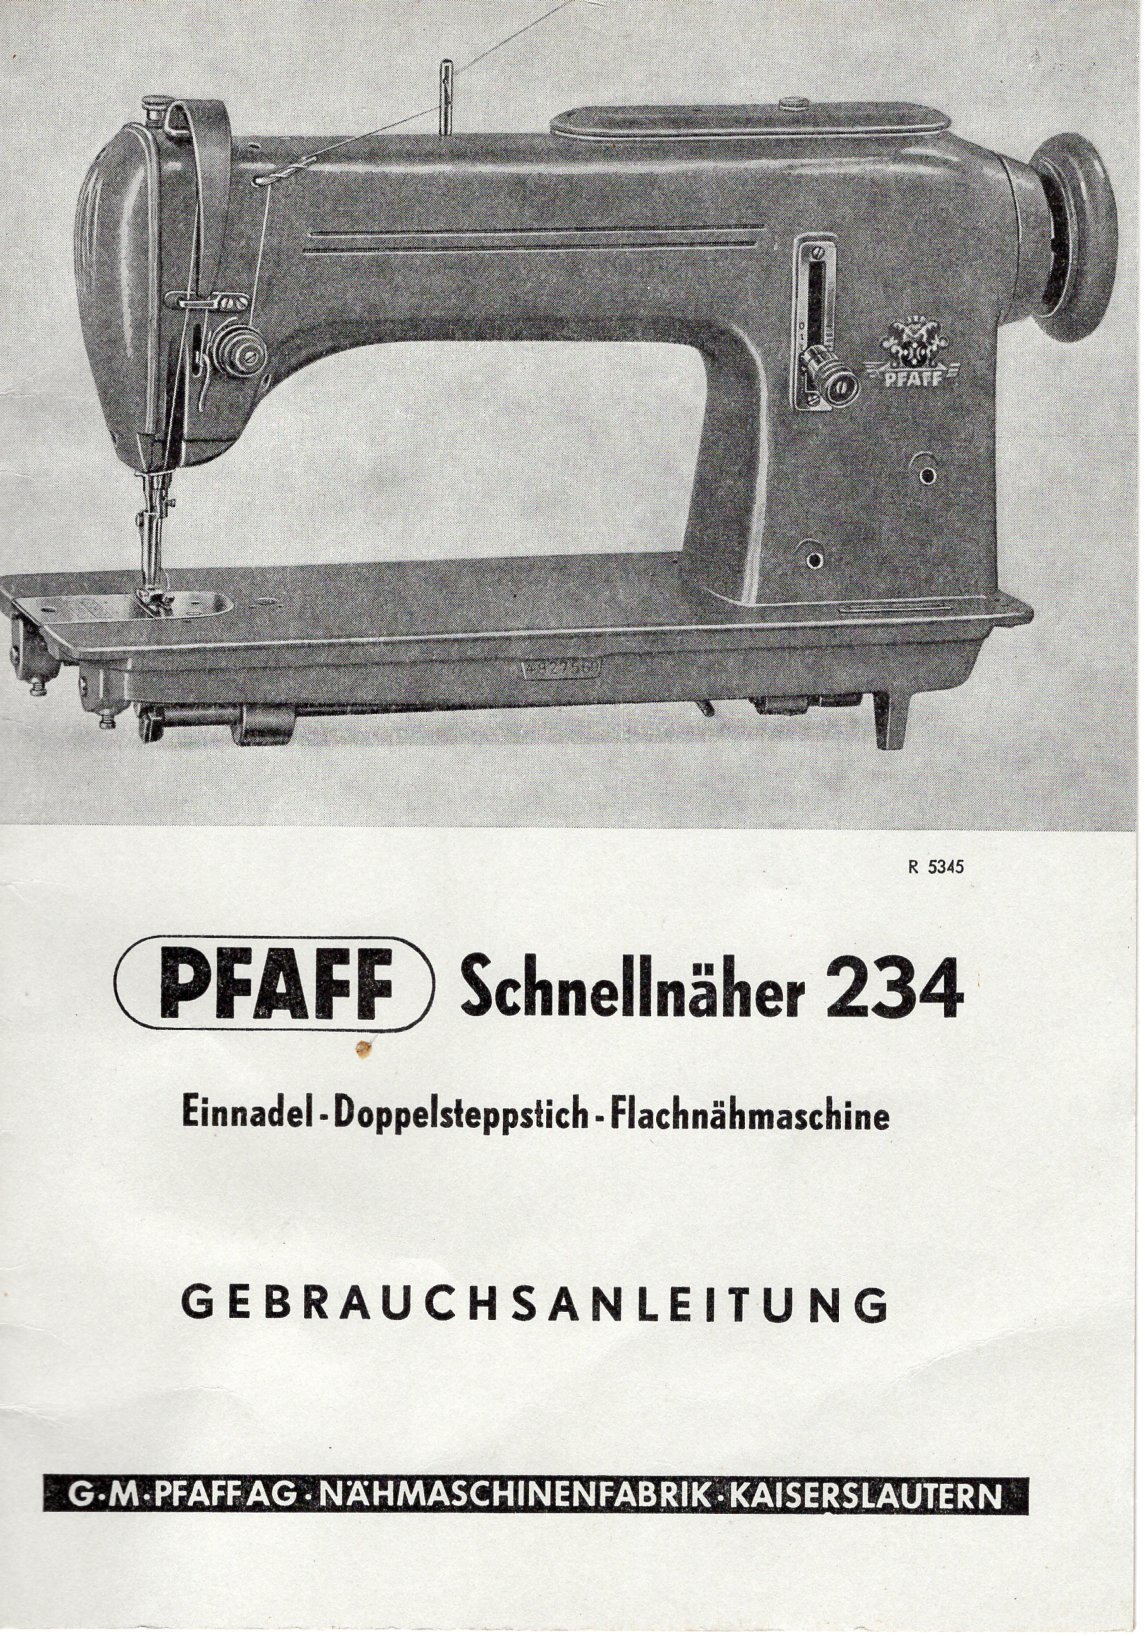 Bedienungsanleitung für Schnellnäher Pfaff Mod. 234 (Freilichtmuseum Roscheider Hof CC0)